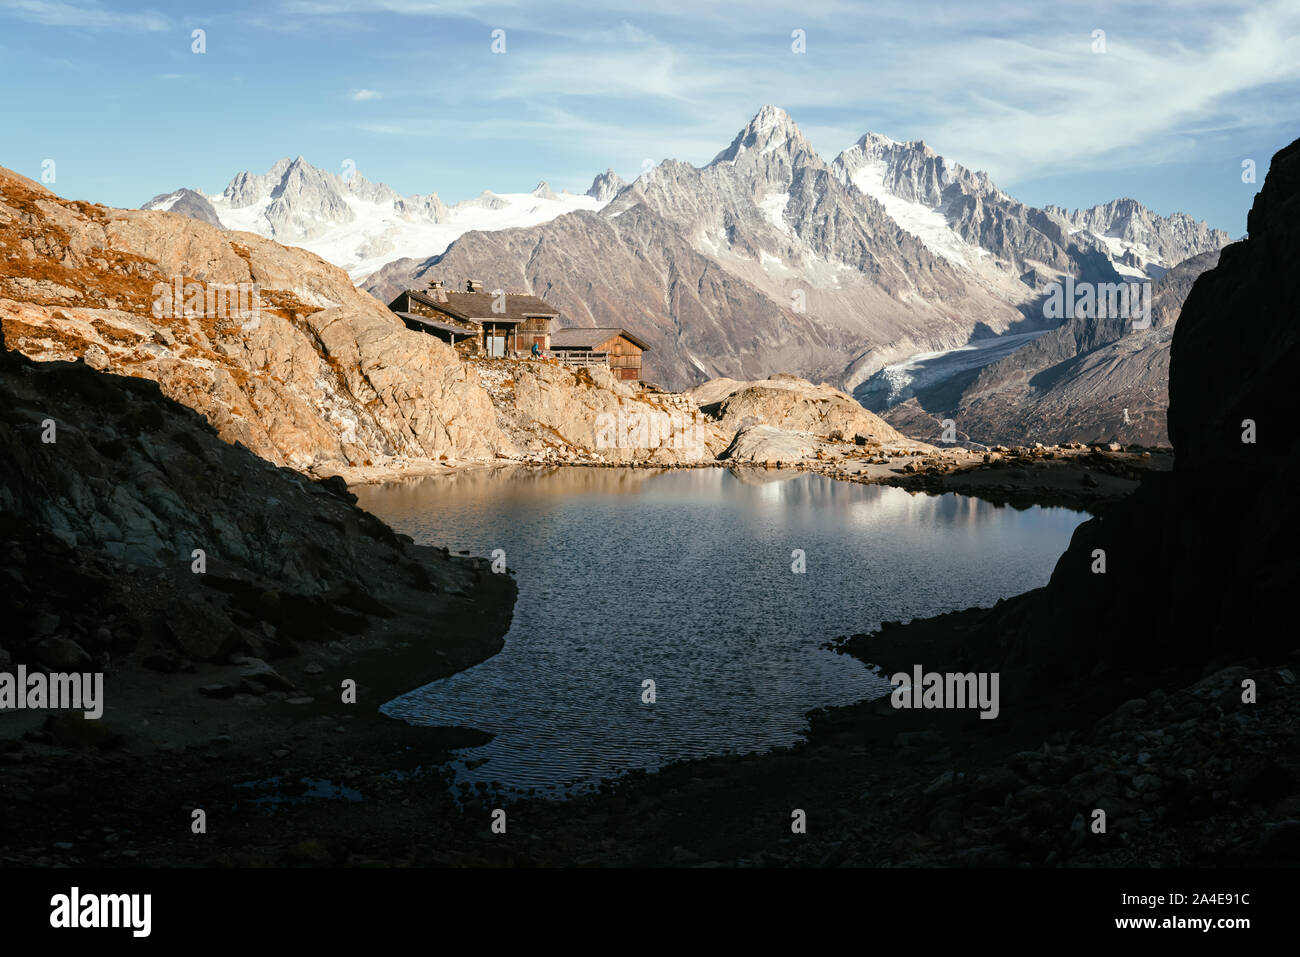 Malerischen Blick auf Wasser und Berge Reflexion über Lac Blanc See in Frankreich Alpen. Monte Bianco Bergkette im Hintergrund. Landschaftsfotografie, Chamonix. Stockfoto